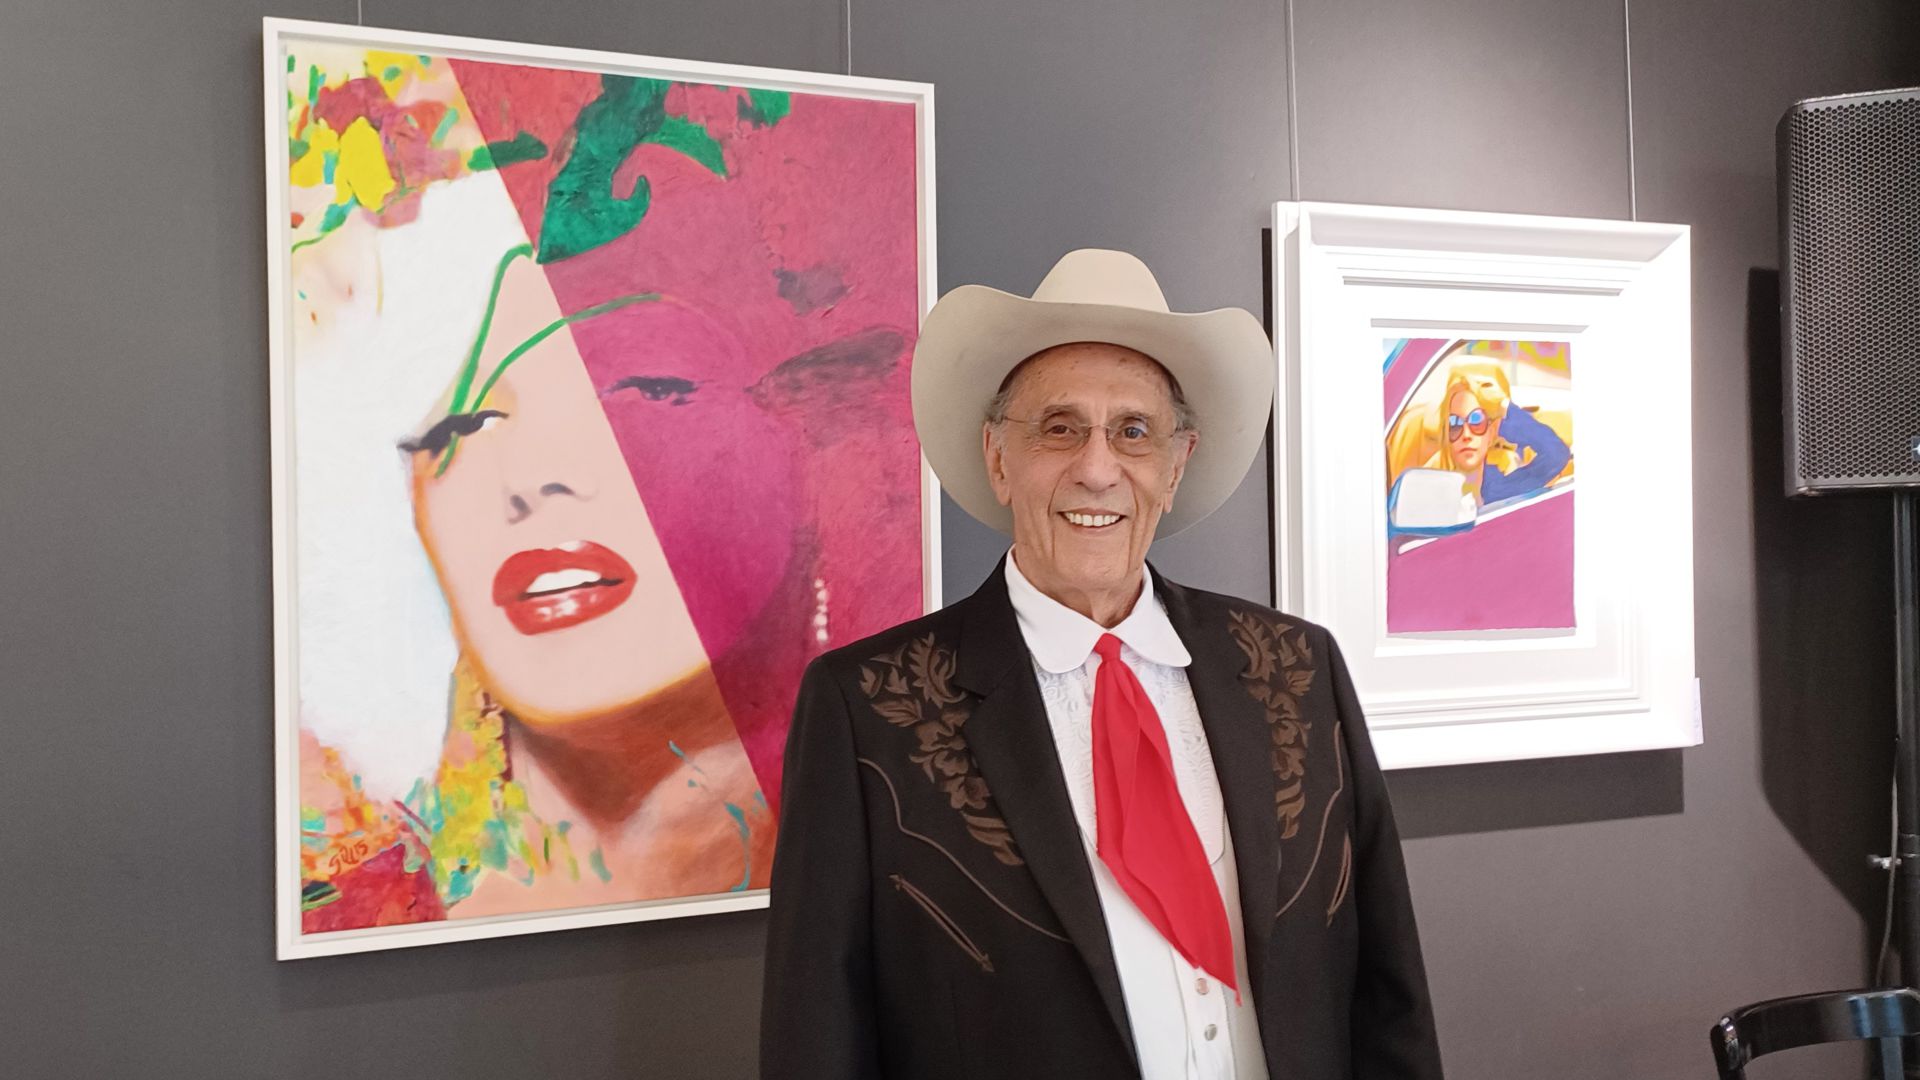 Der Pop-Art-Maler James Francis Gill aus Texas steht zwischen zwei Acrylporträts mit Filmikonen in der Karlsruher Galerie Elwert.  